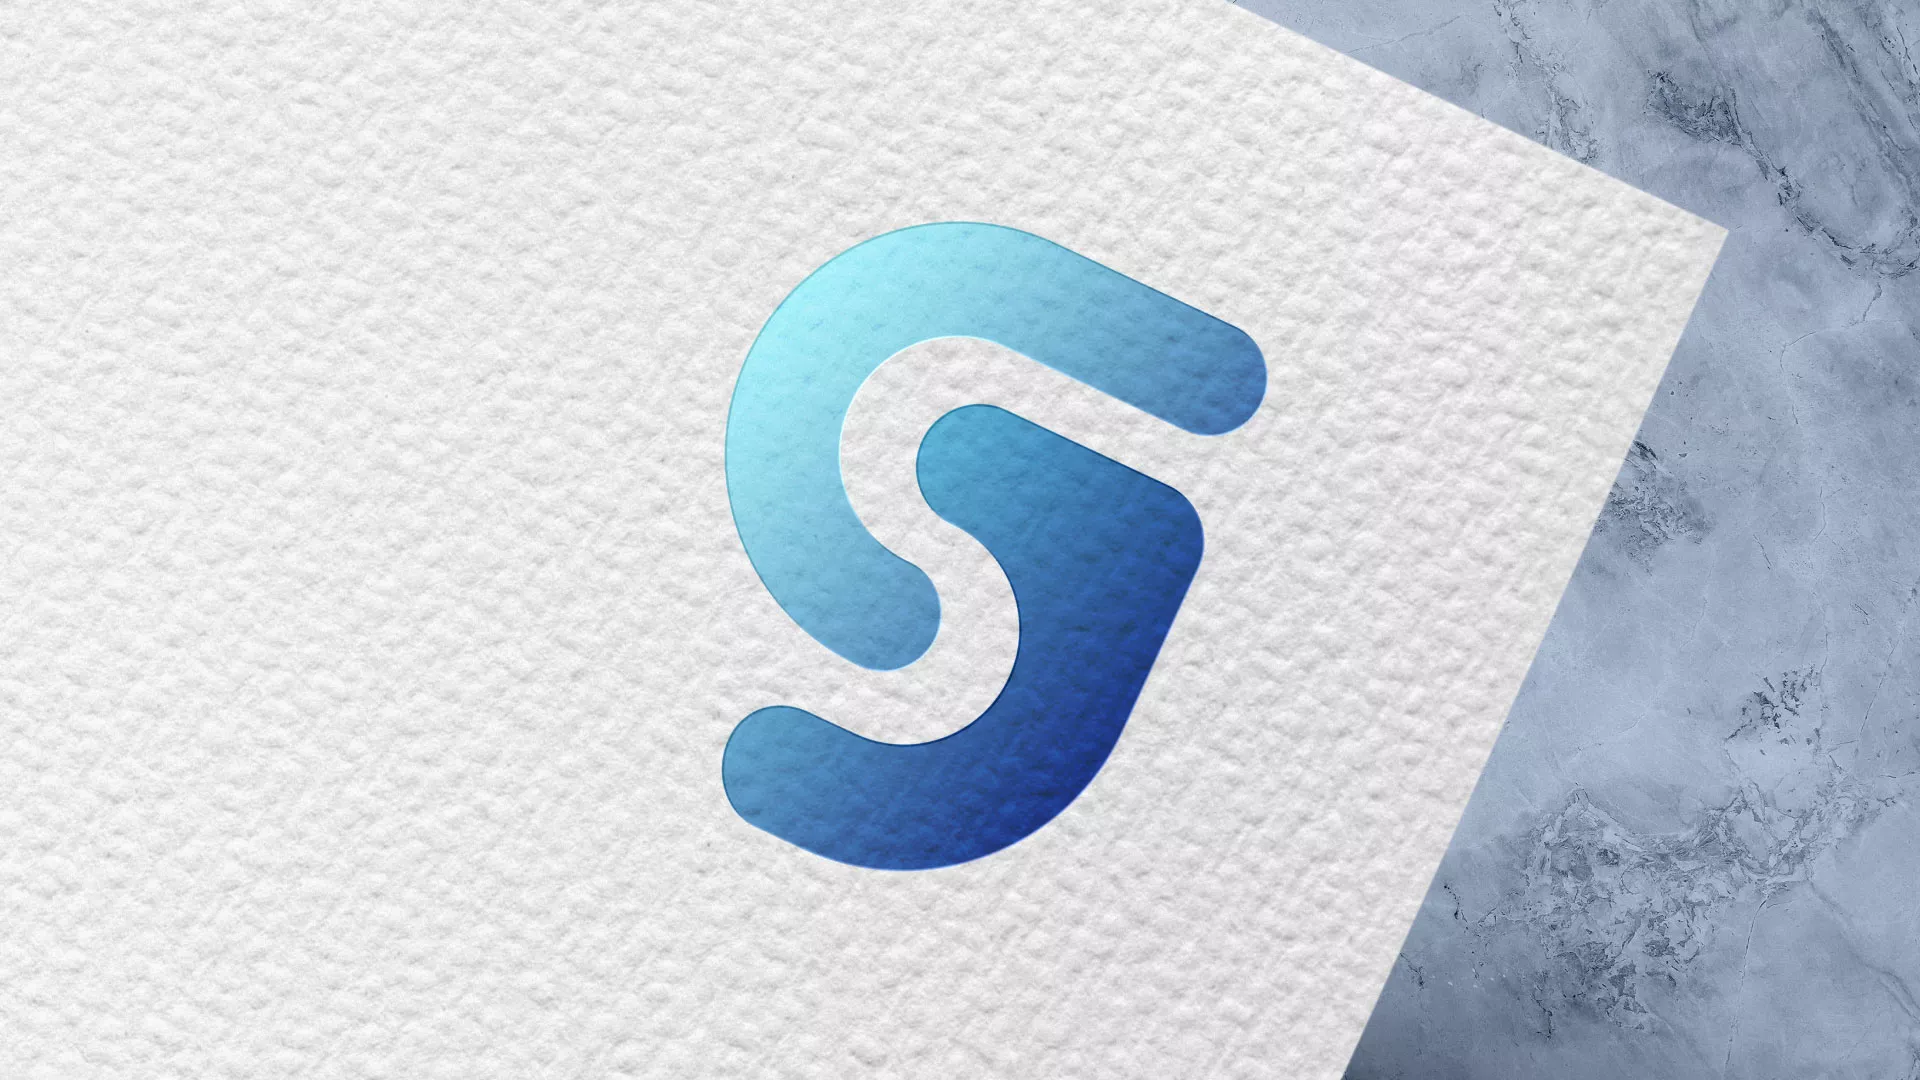 Разработка логотипа газовой компании «Сервис газ» в Шахтёрске